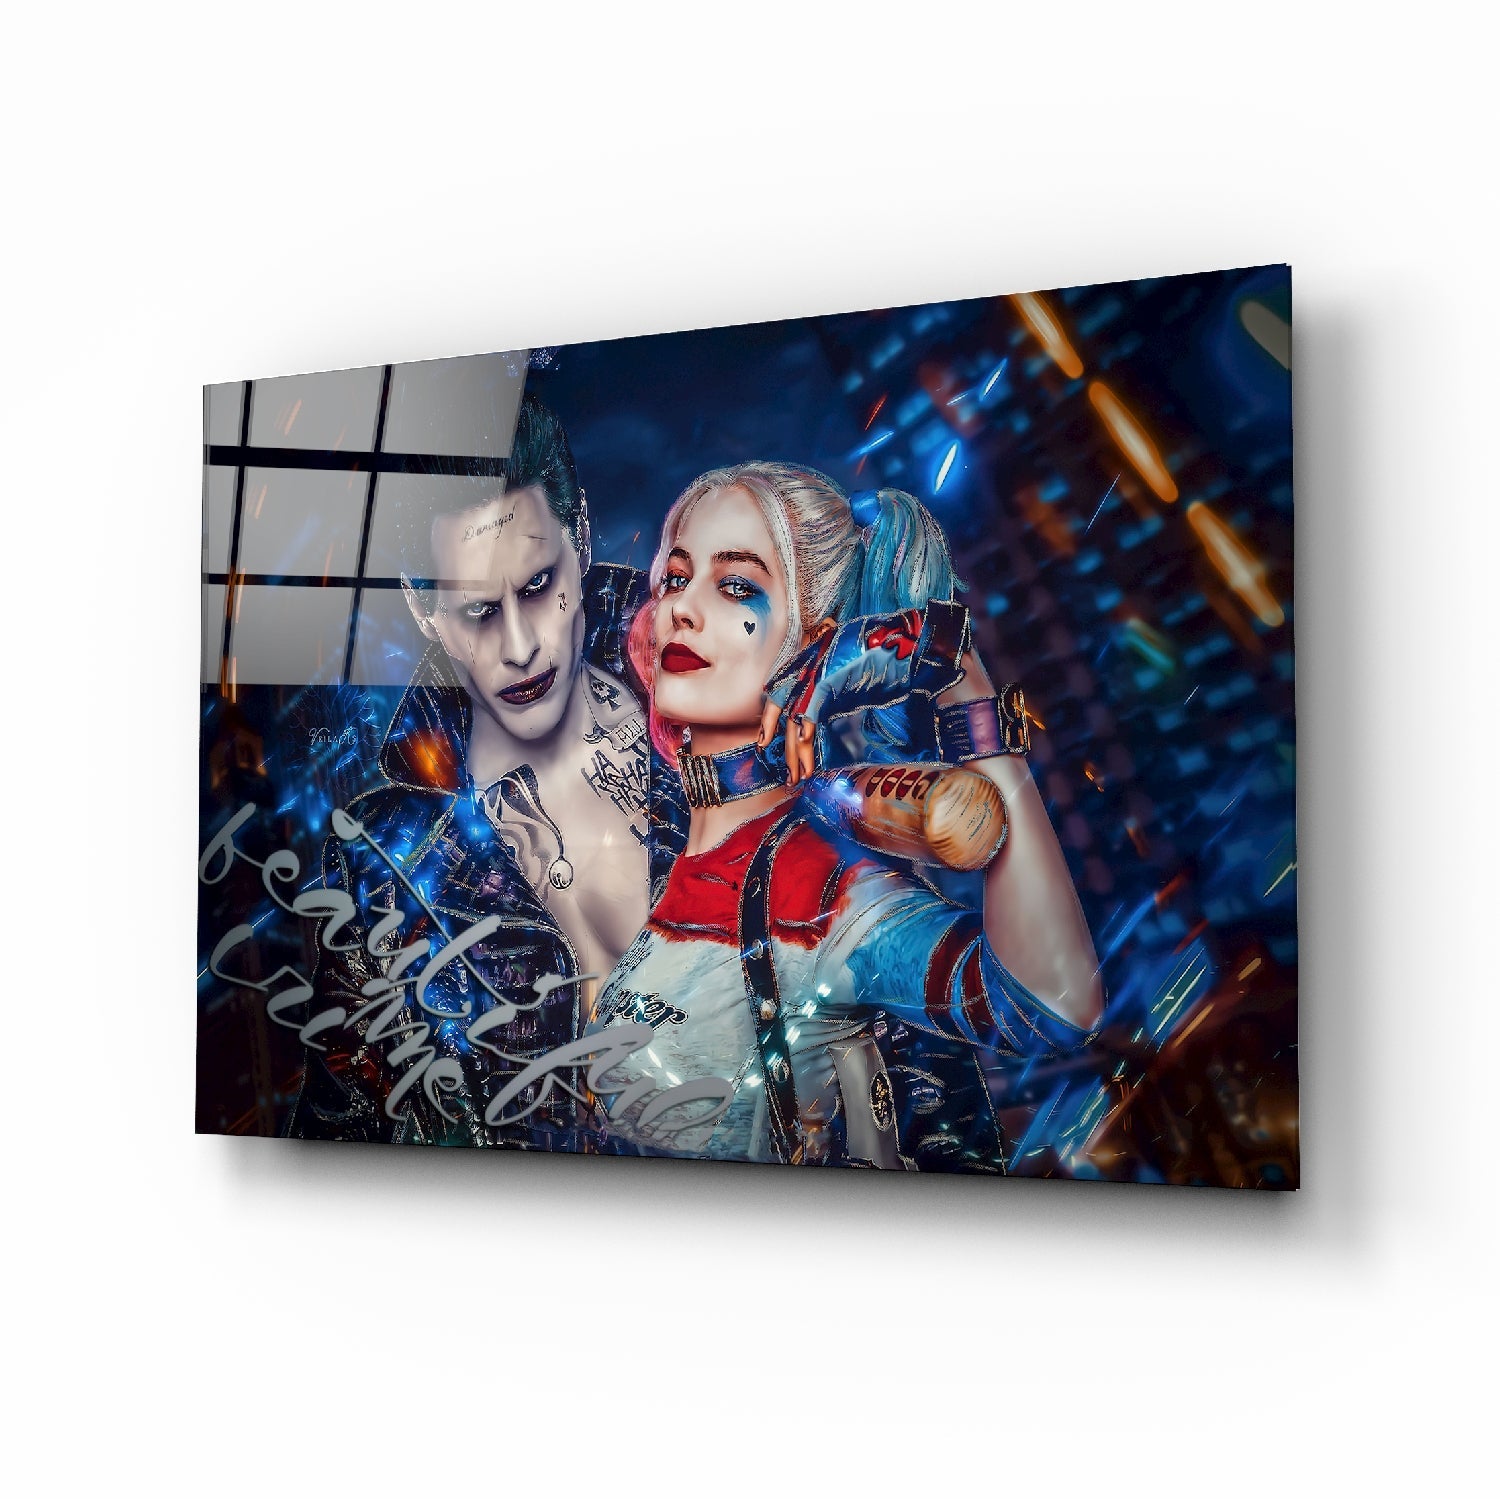 Harley Quinn and the Joker Glass Art | Insigne Art Design